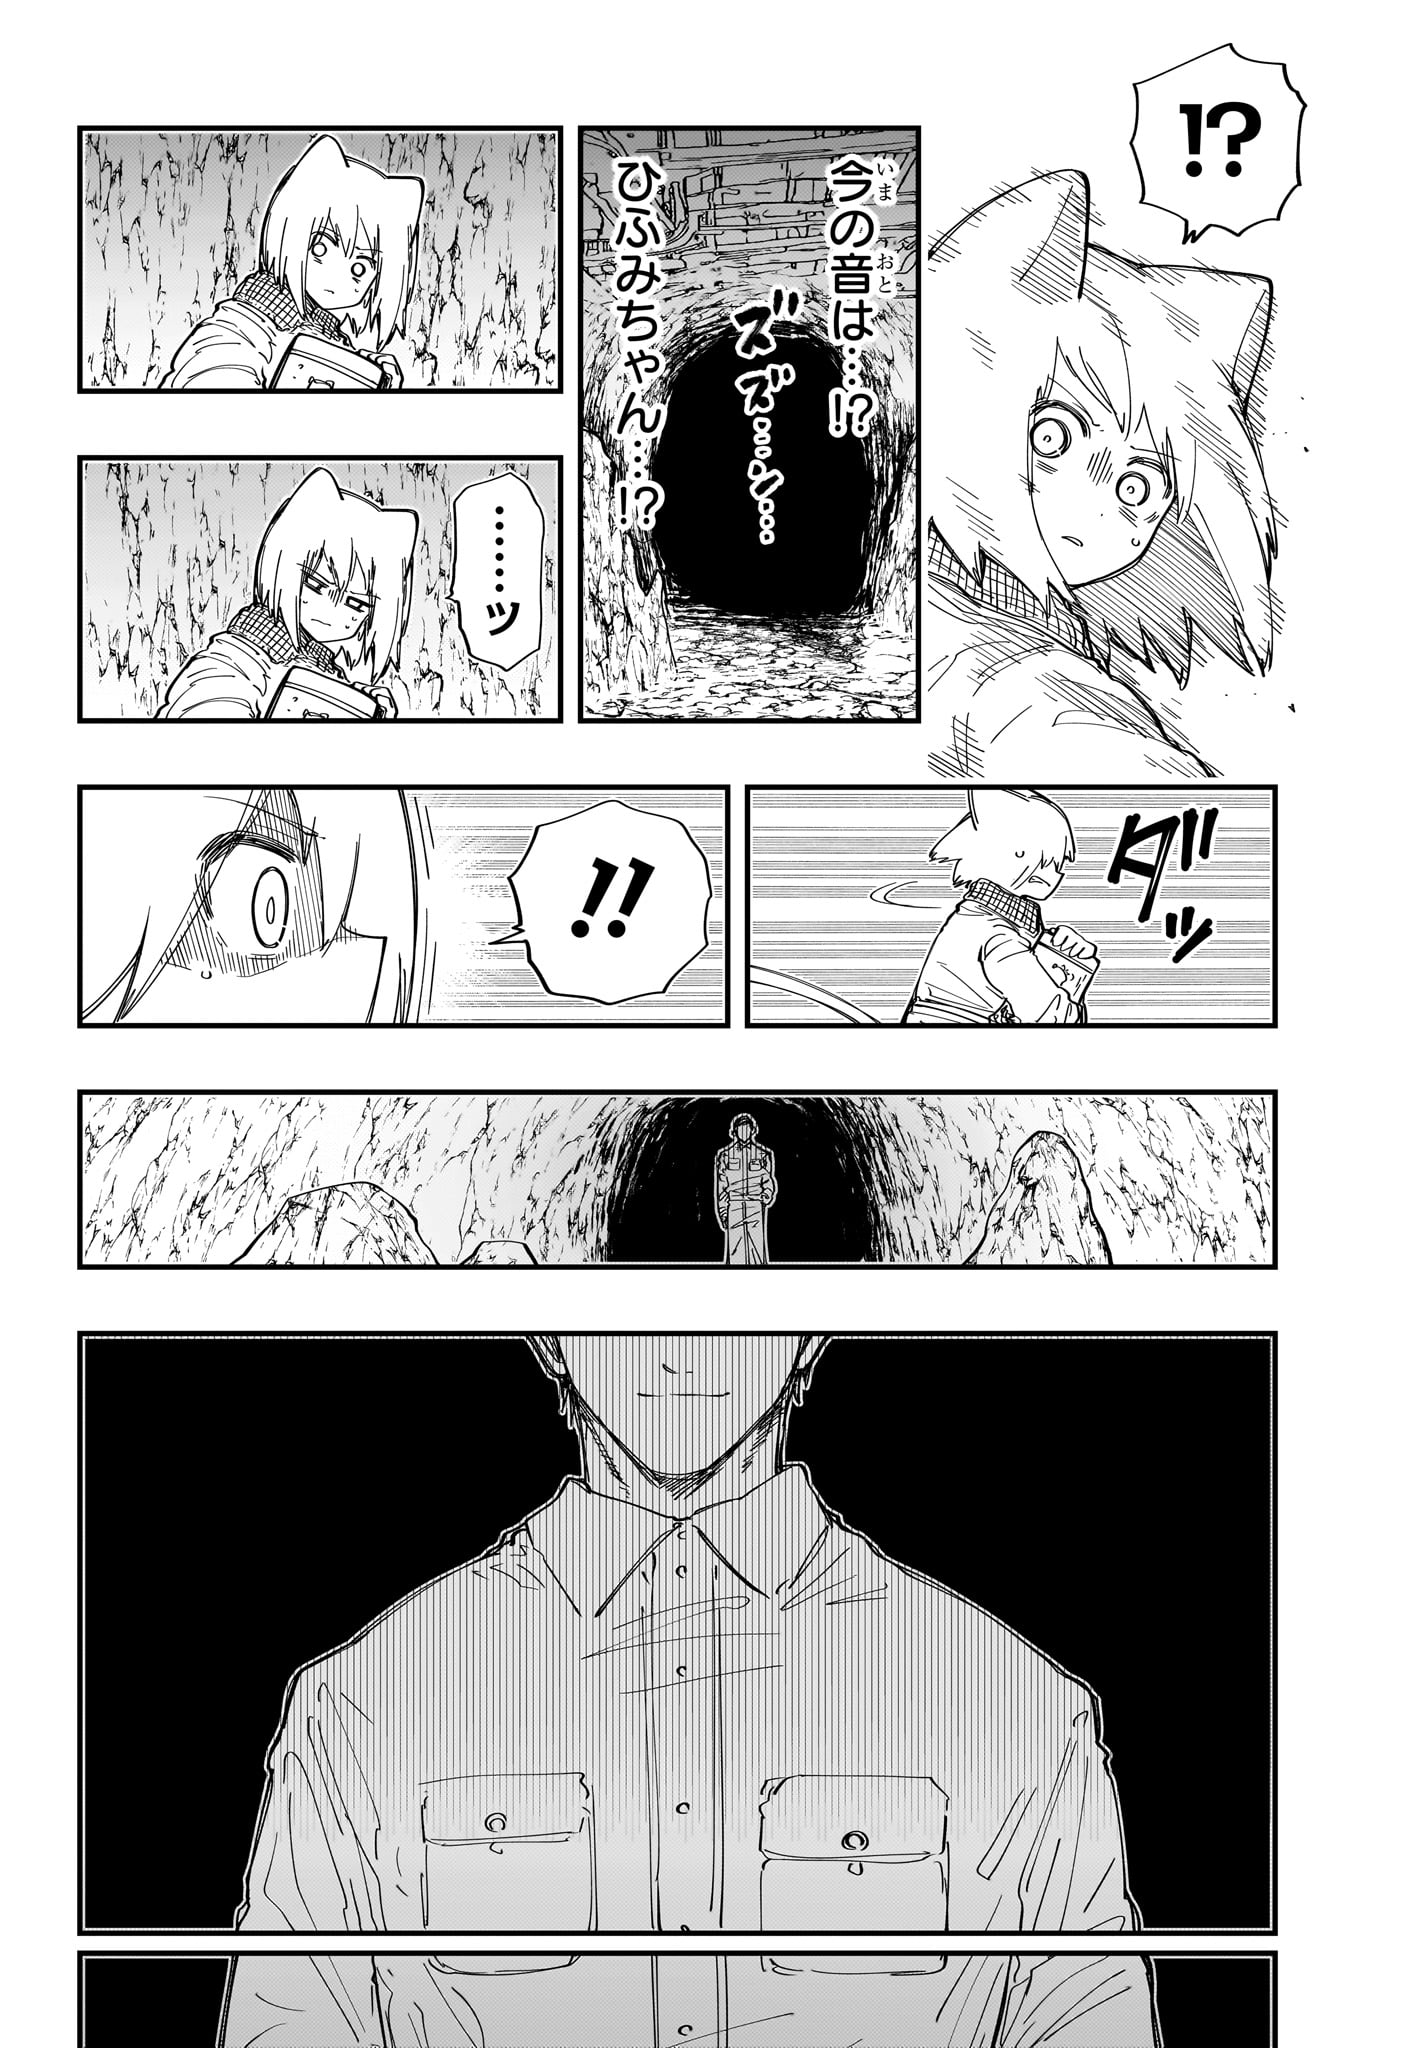 Yozakura-san Chi no Daisakusen - Chapter 212 - Page 18